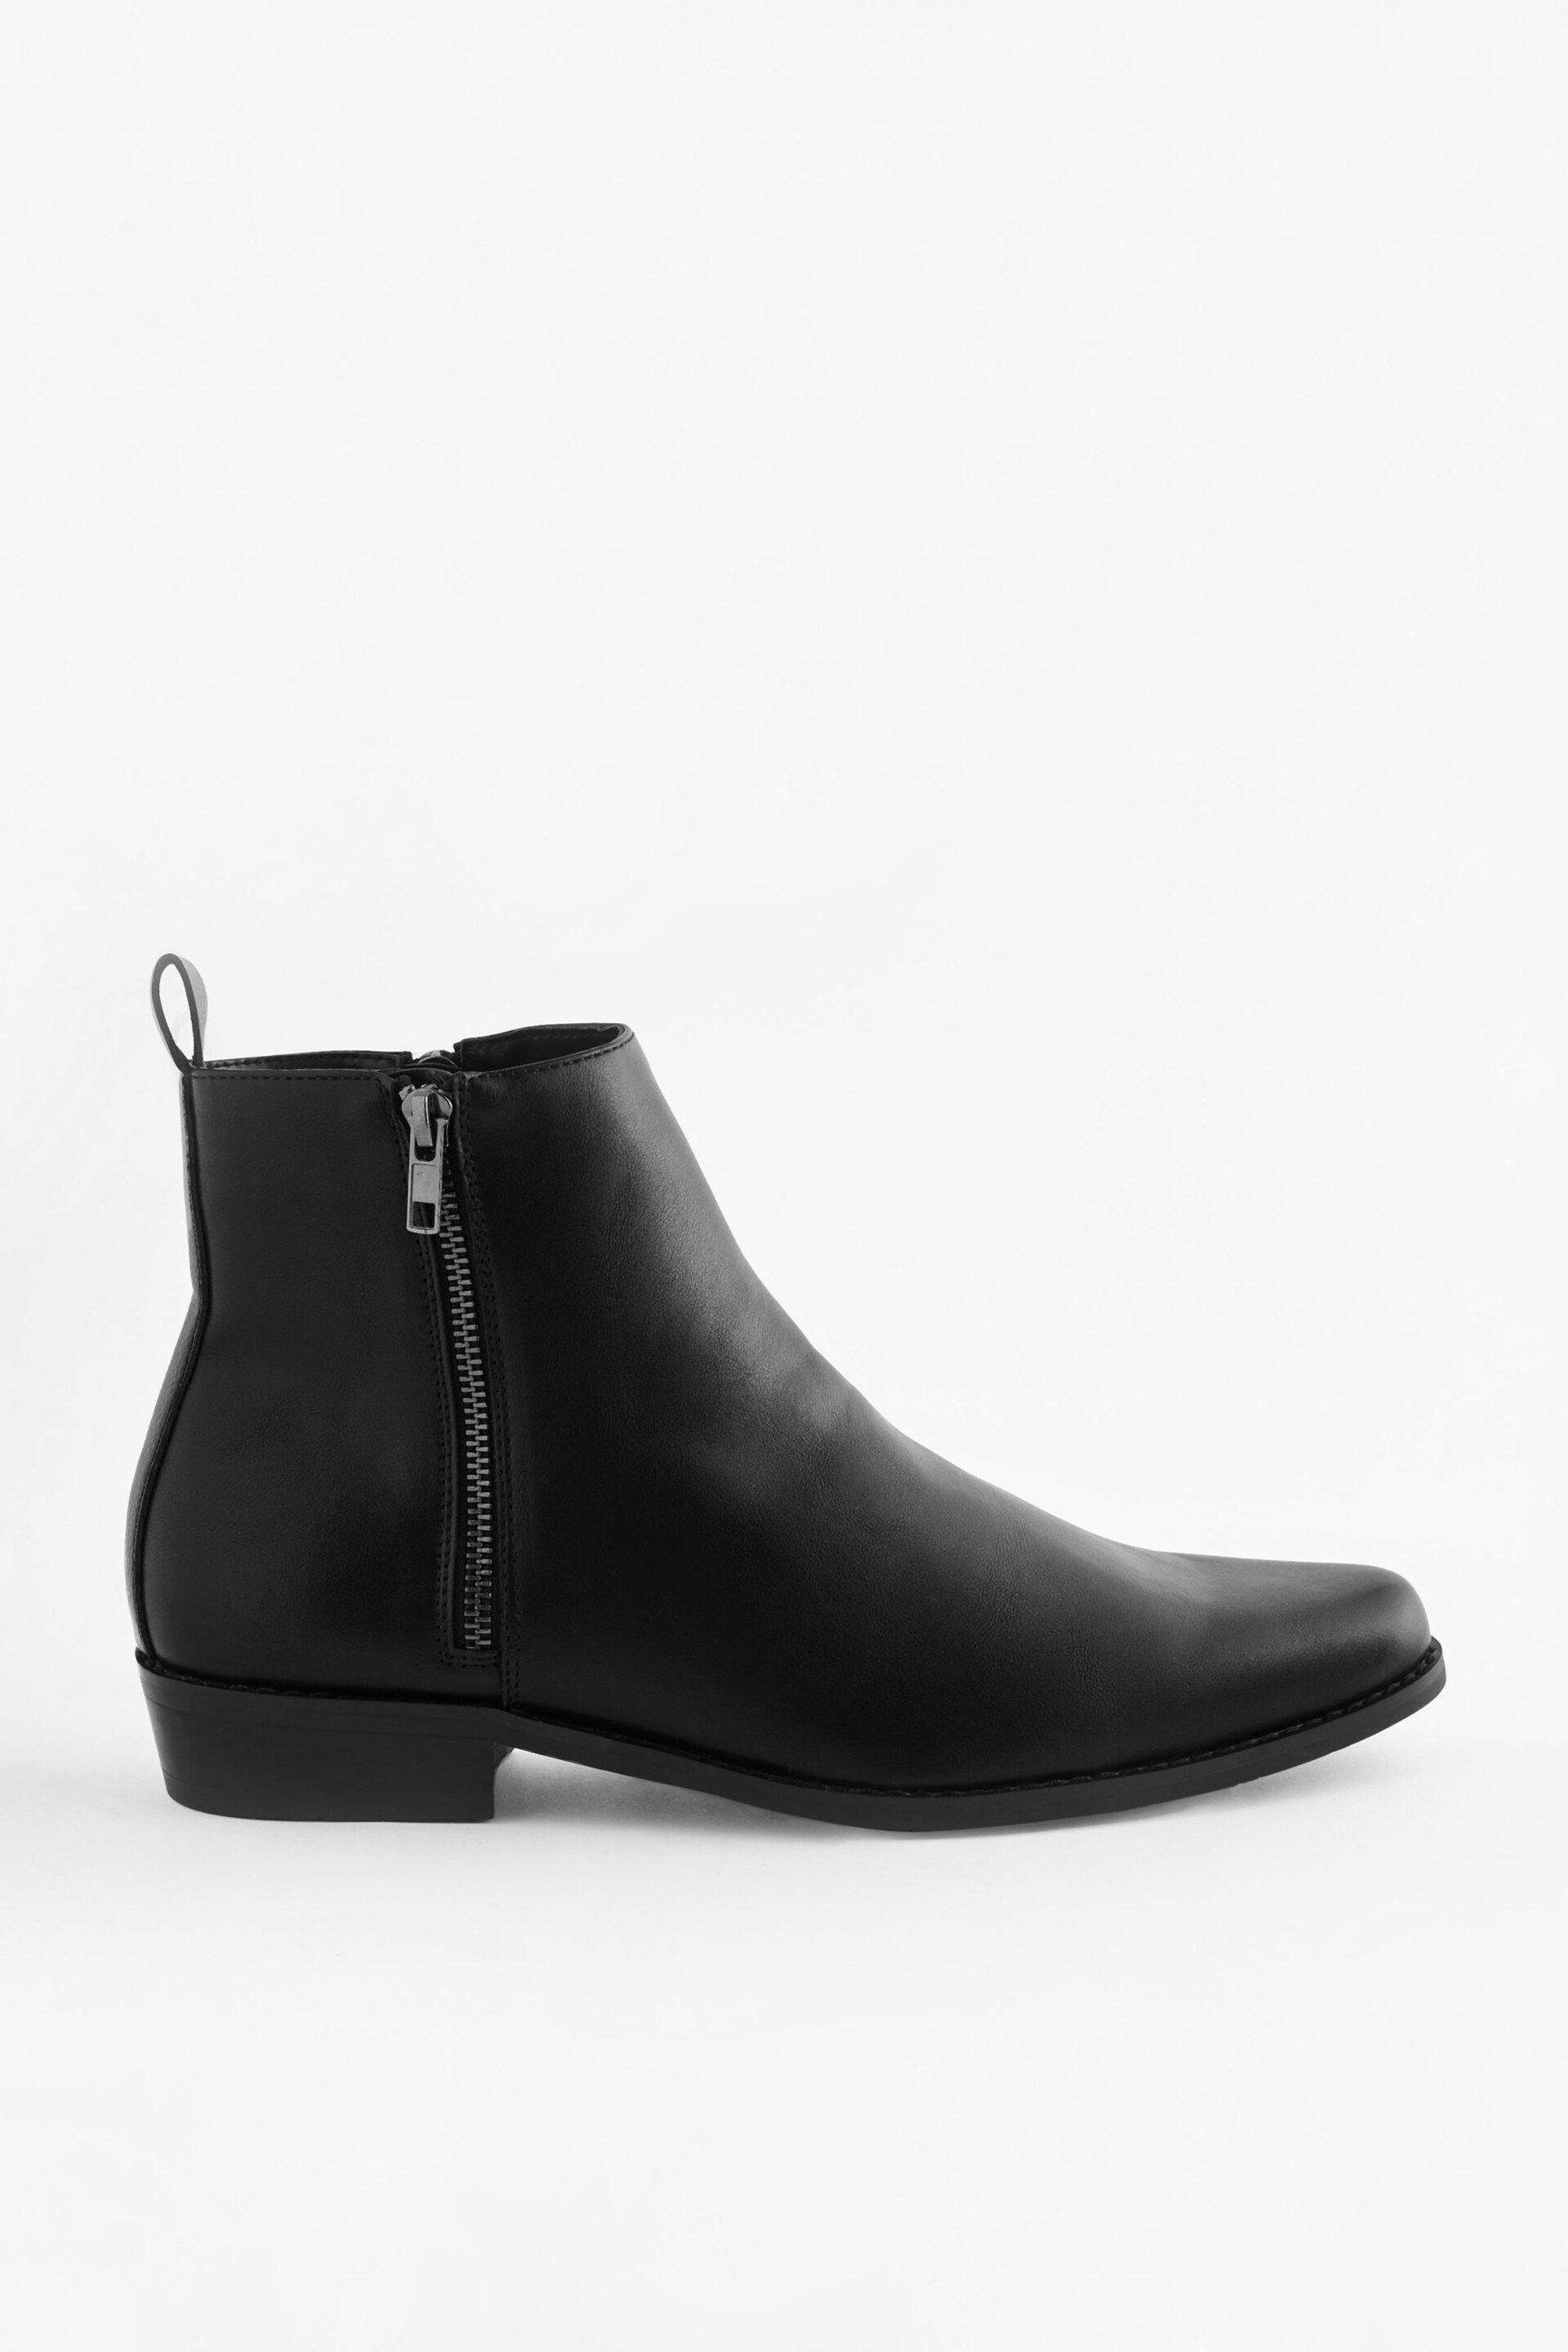 Black EDIT Zip Chelsea Boots - Image 3 of 8